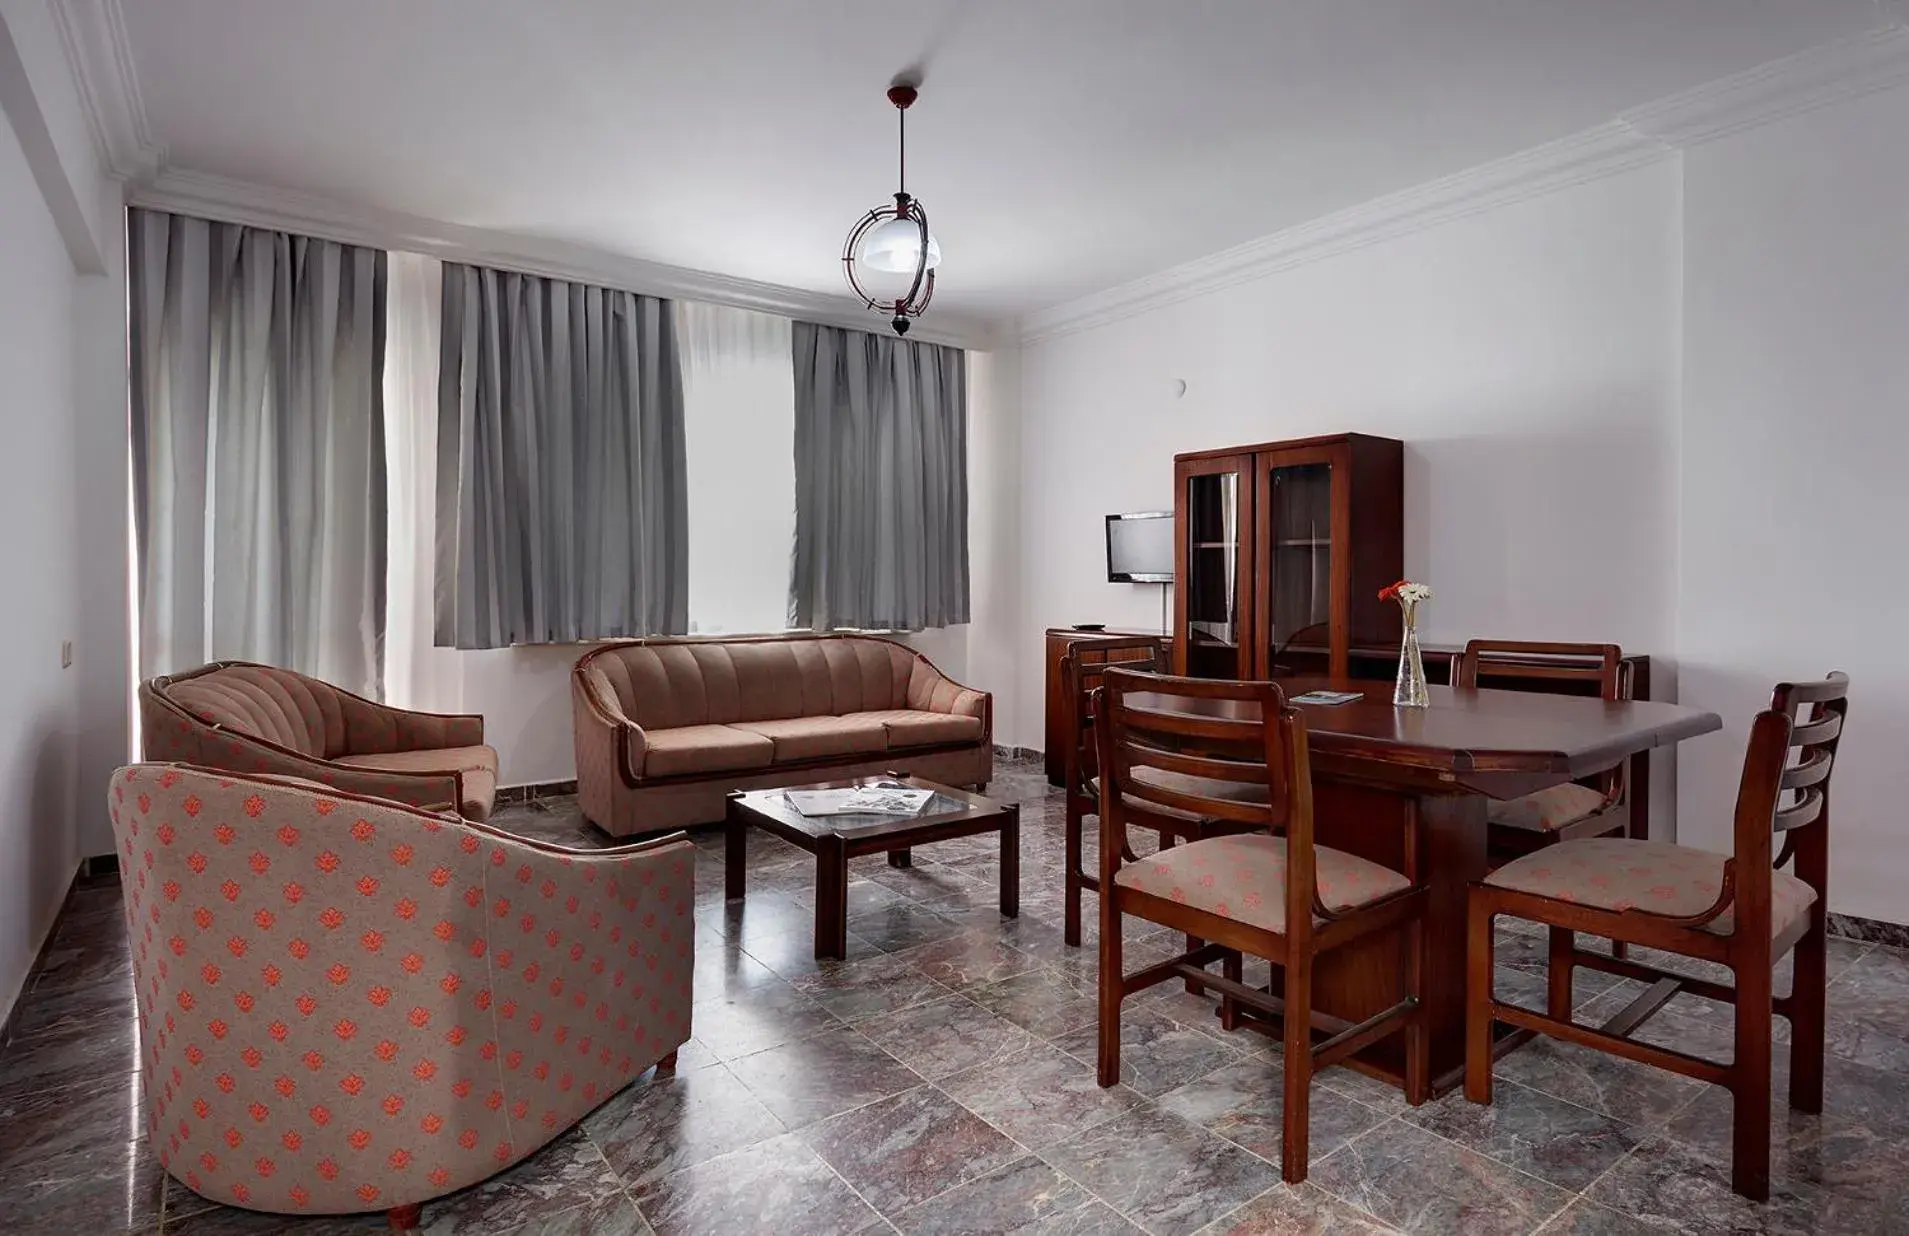 Decorative detail, Seating Area in Hotel Billurcu